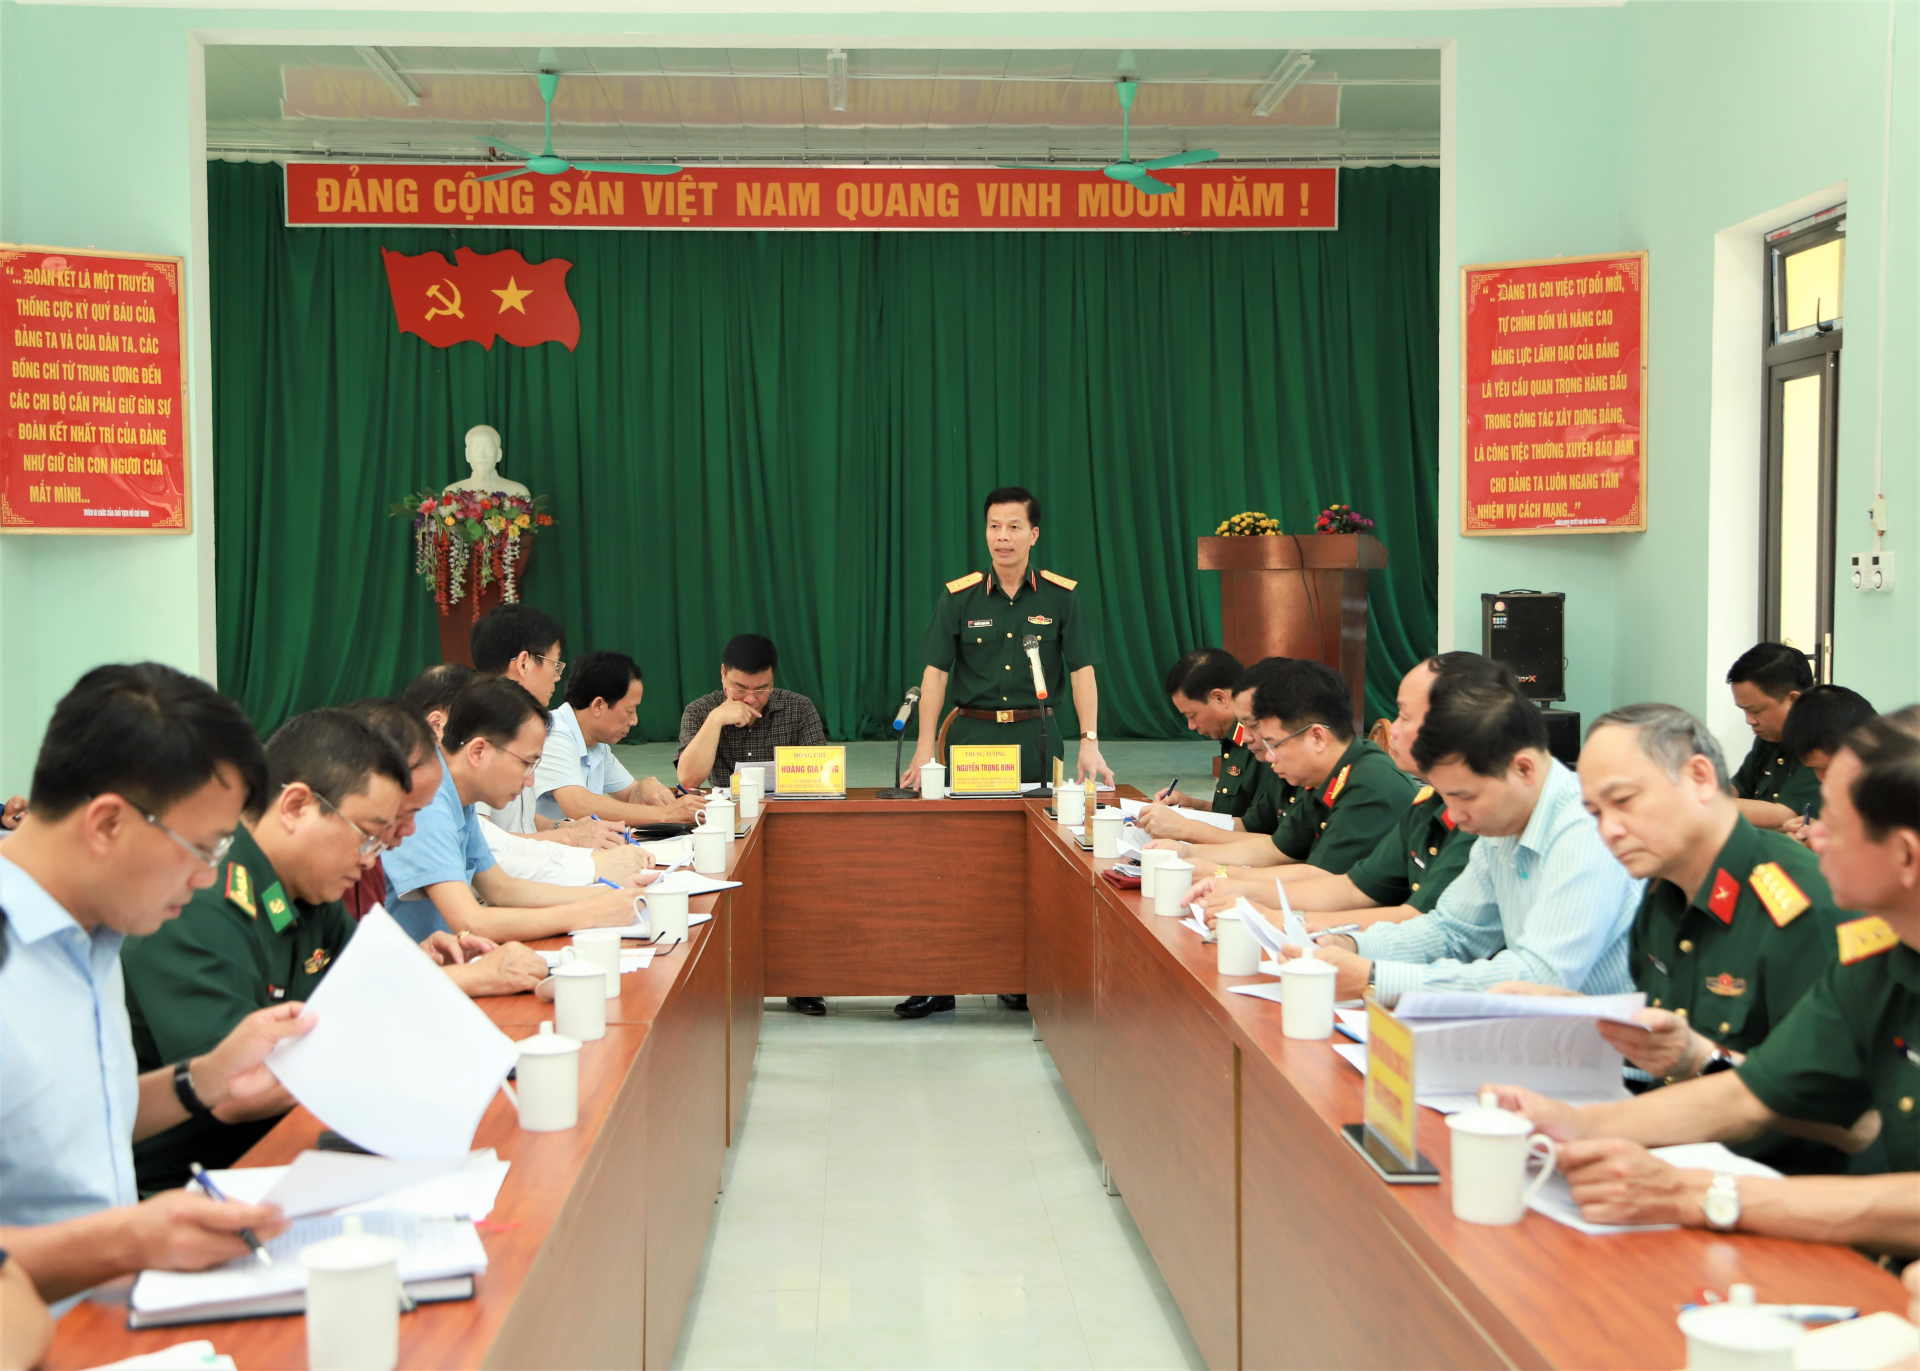 Phó Tham mưu trưởng QĐND Việt Nam Nguyễn Trọng Bình phát biểu kết luận buổi làm việc